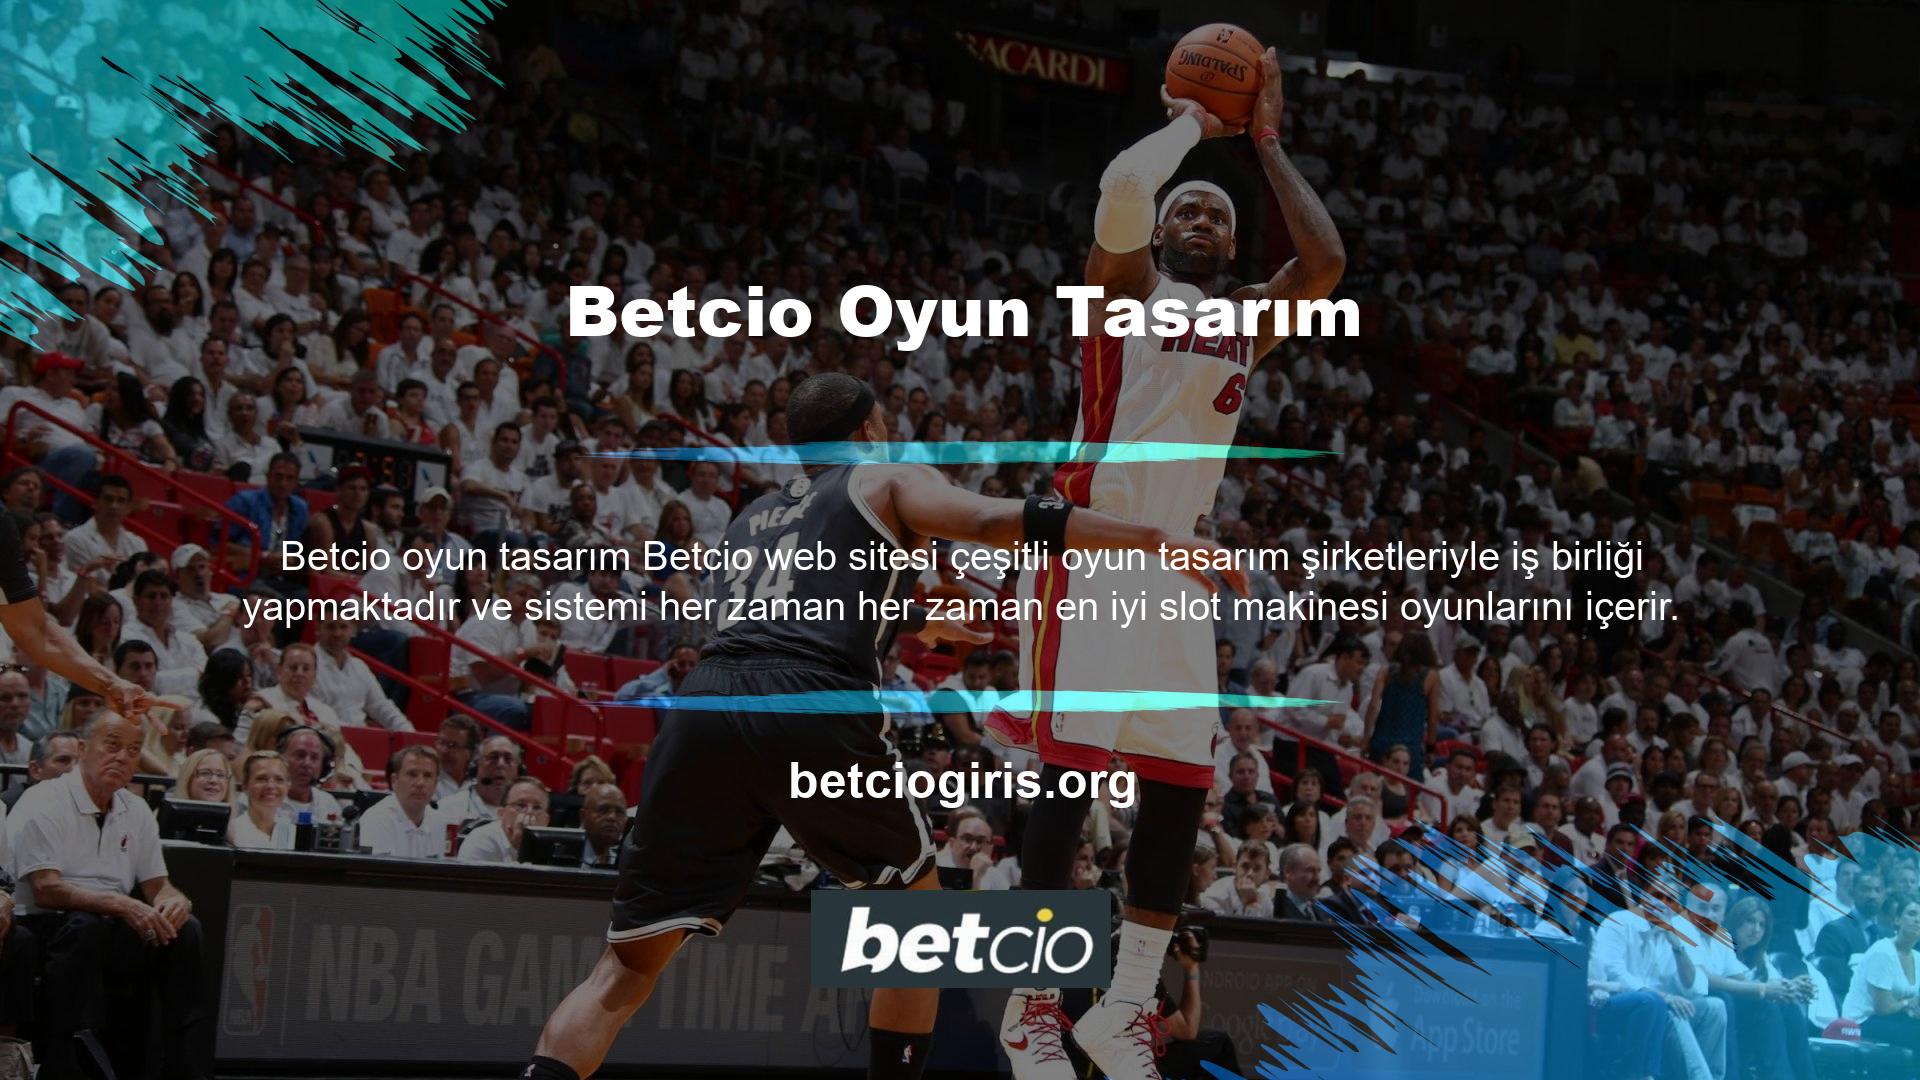 Betcio web sitesi, bu önemli firmaların desteğiyle yatırımcılara her zaman oyun hizmetleri satın alma konusunda oyun seçenekleri sunmaktadır